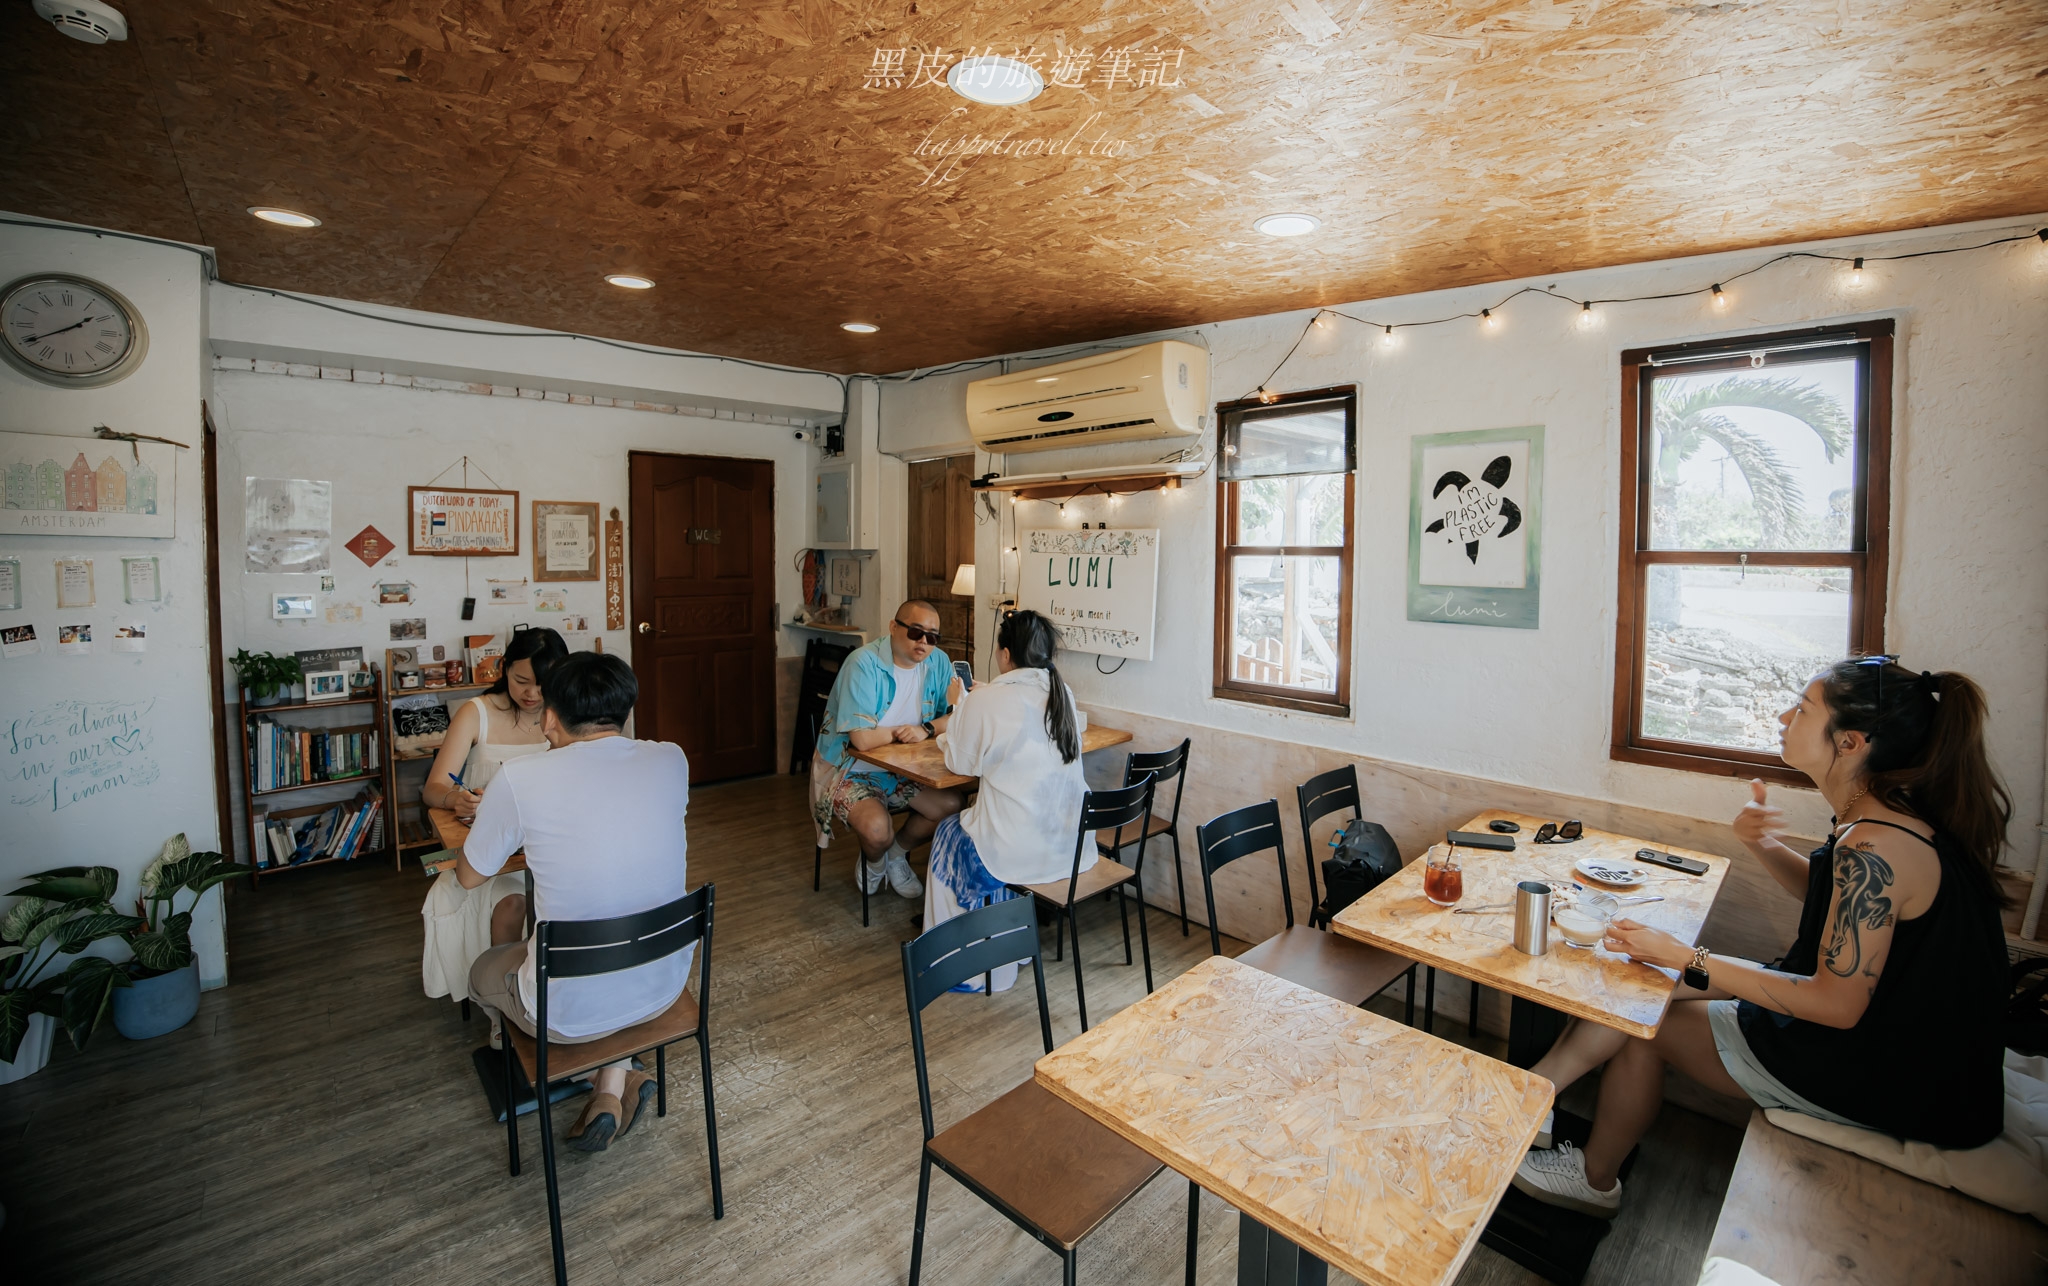 墾丁咖啡廳【LUMI 咖啡店】南國中帶有荷蘭氣息的矮房咖啡廳，Q彈的荷蘭鬆餅更是必點